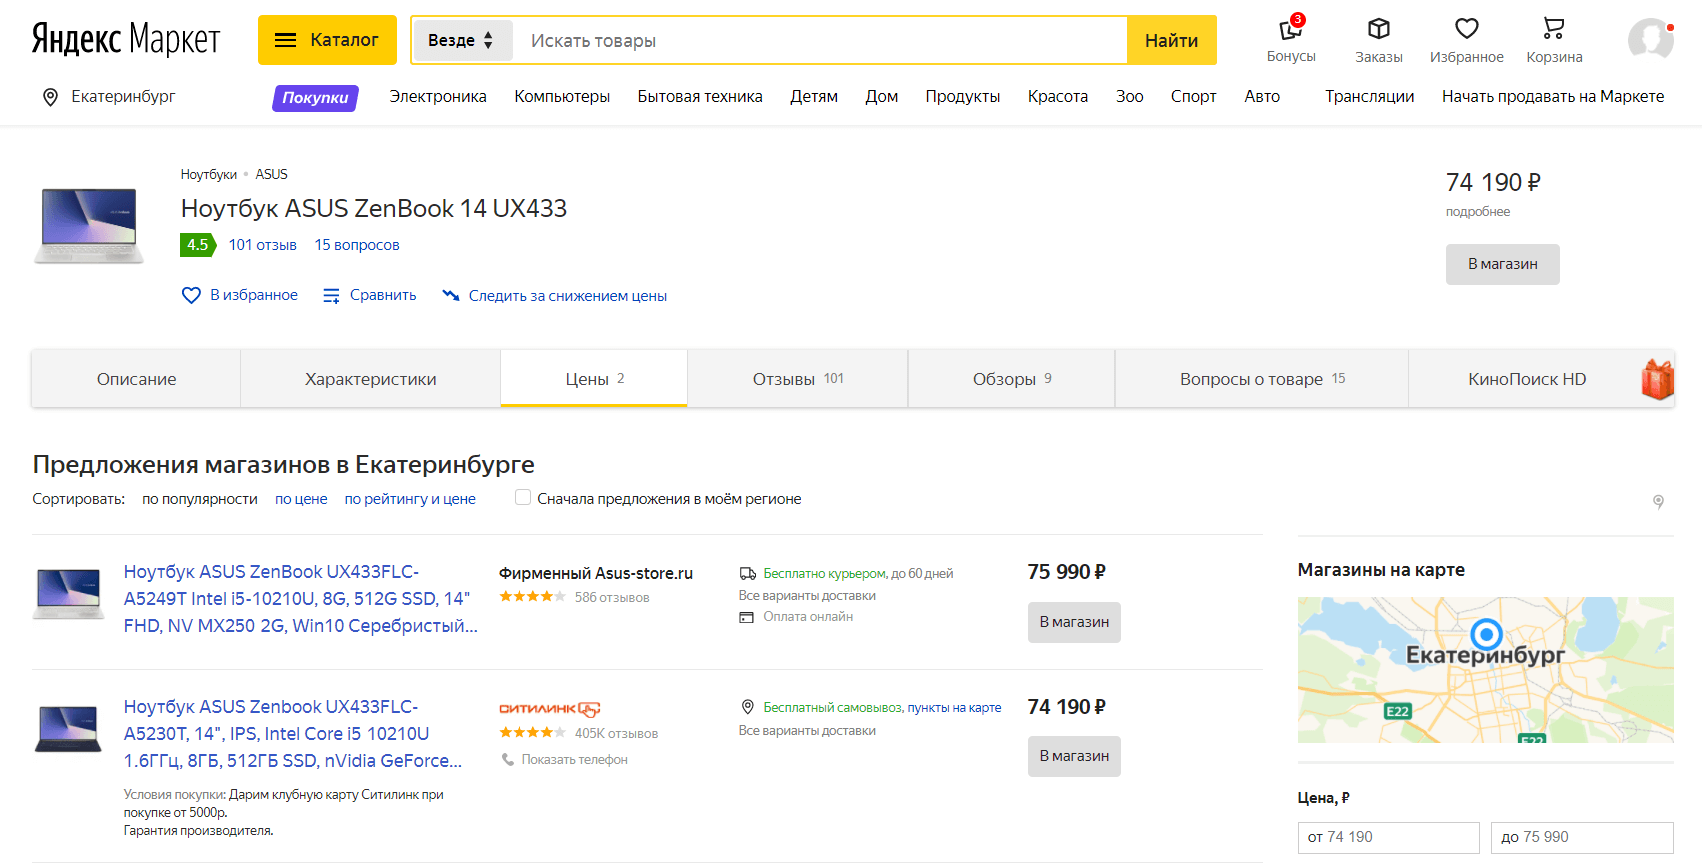 сравнение цен на Яндекс Маркете